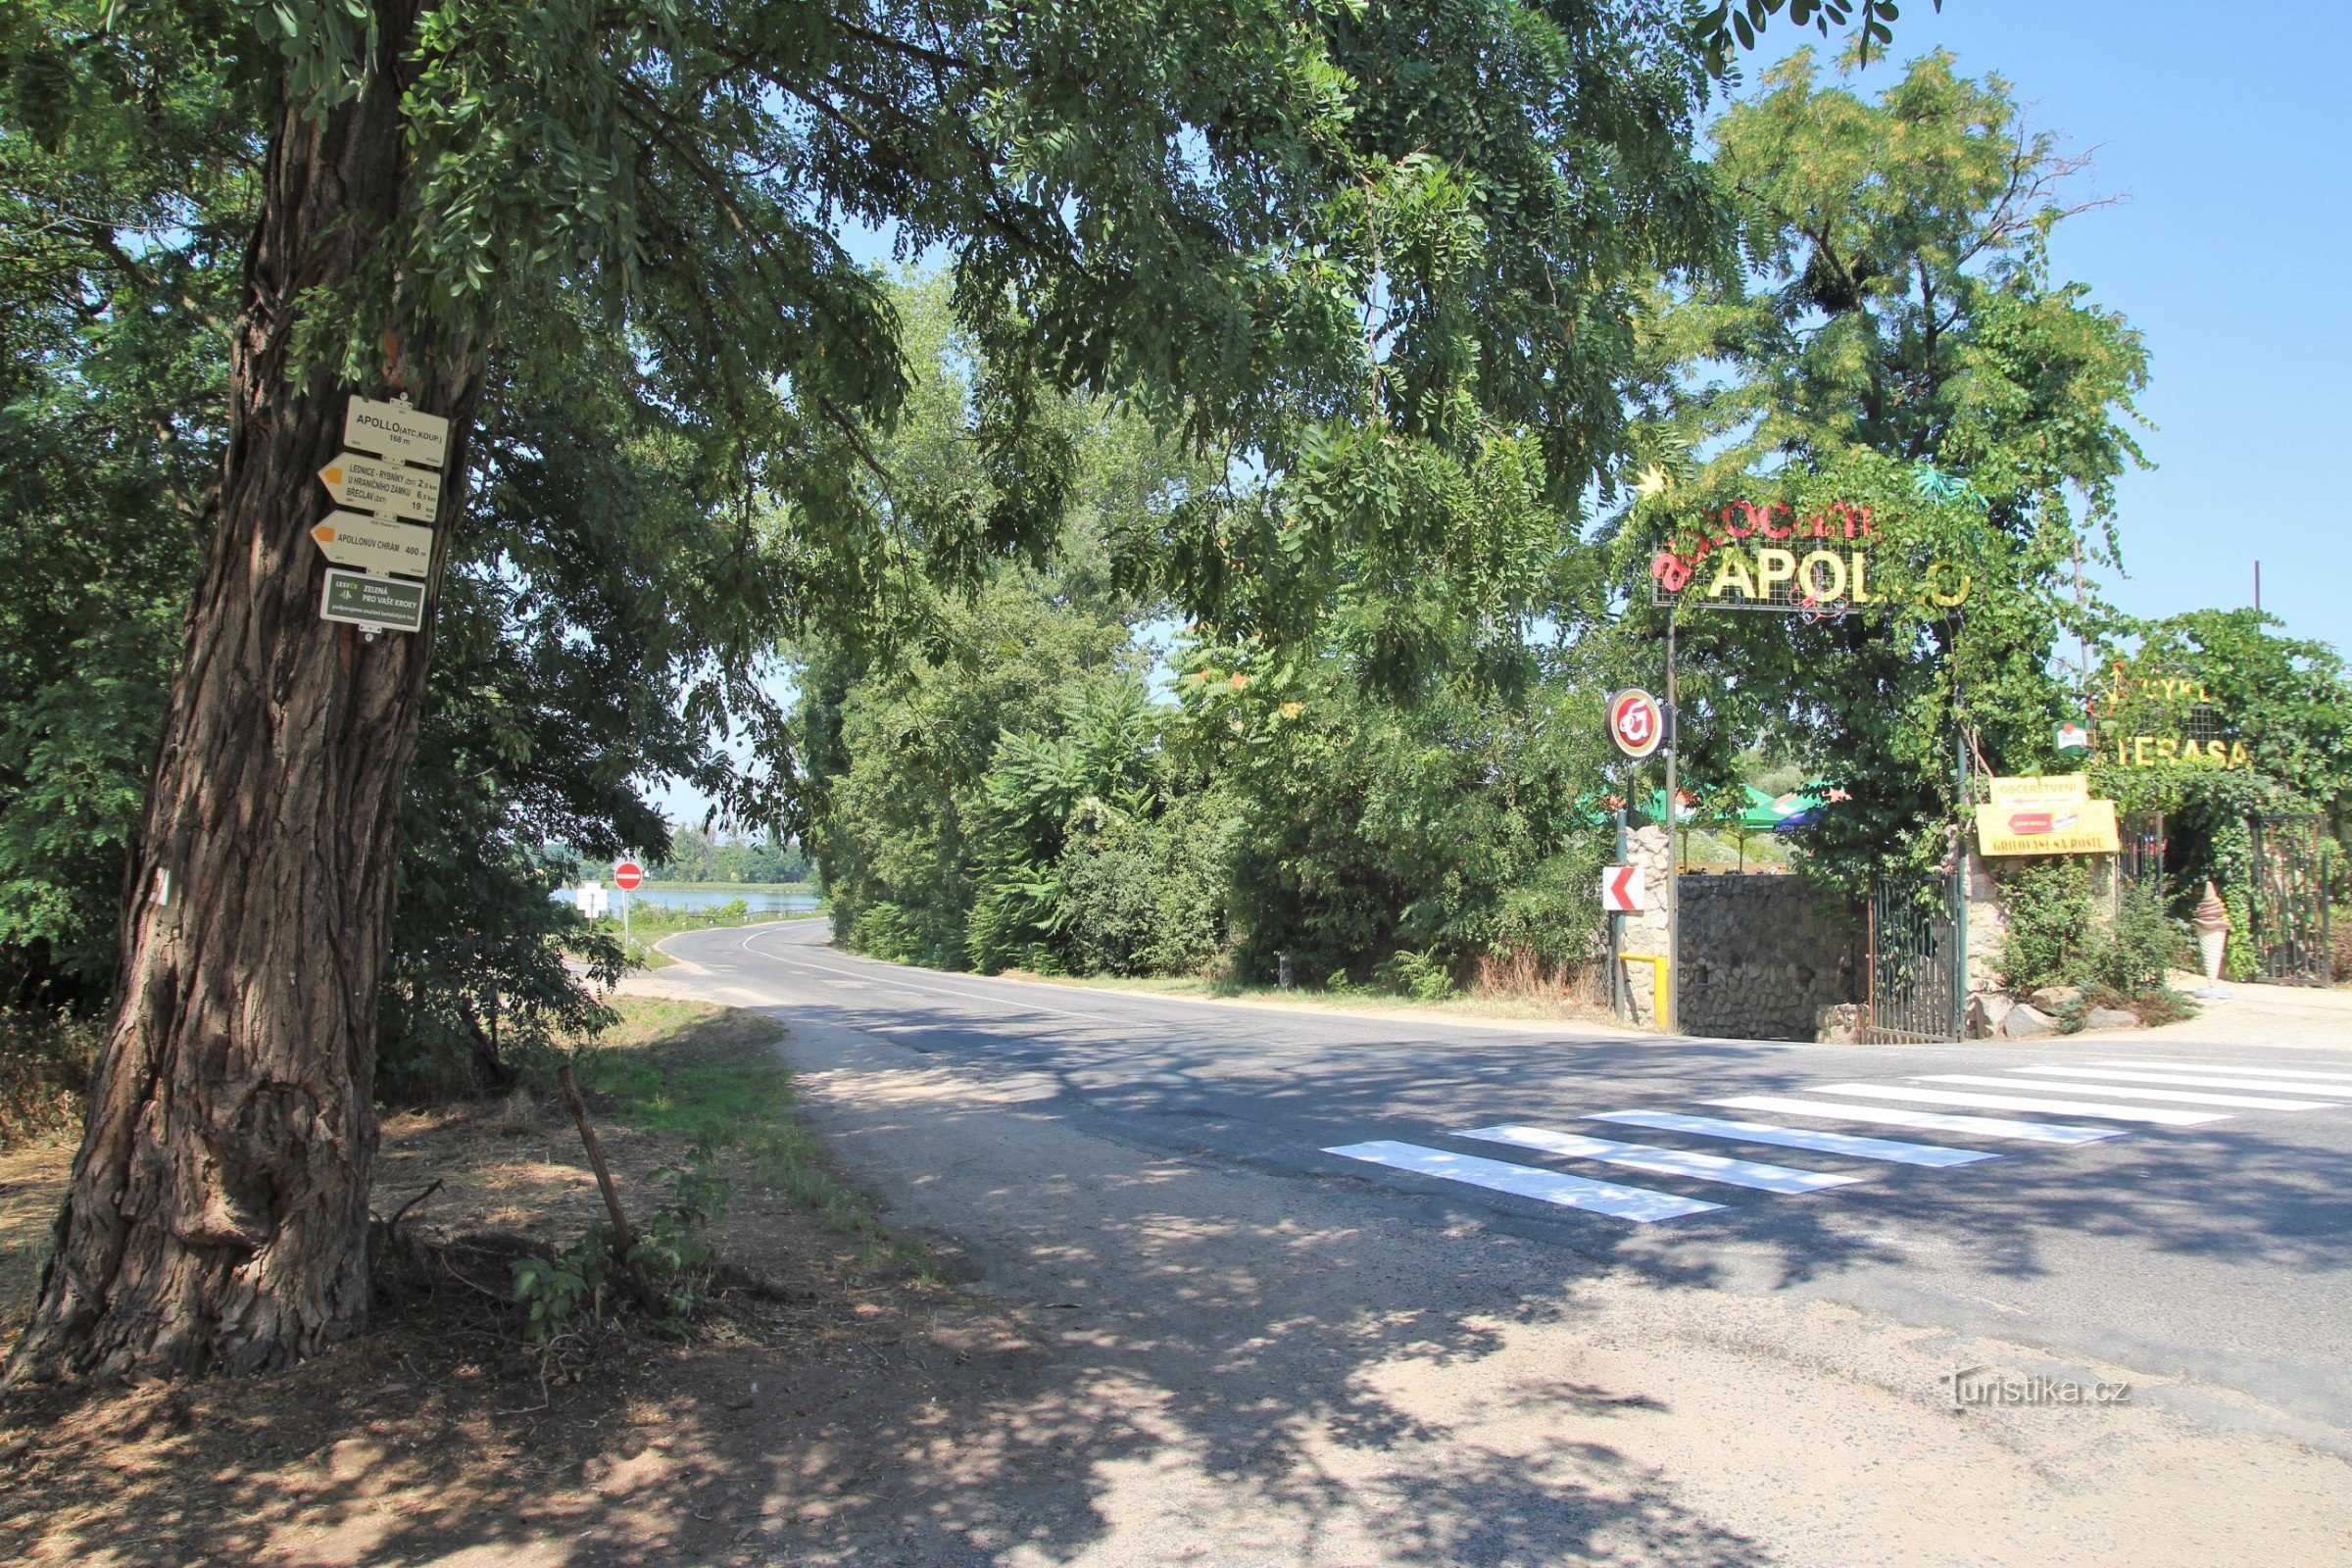 Turističko raskrižje Apollo nalazi se nasuprot ulaza u istoimeni kamp